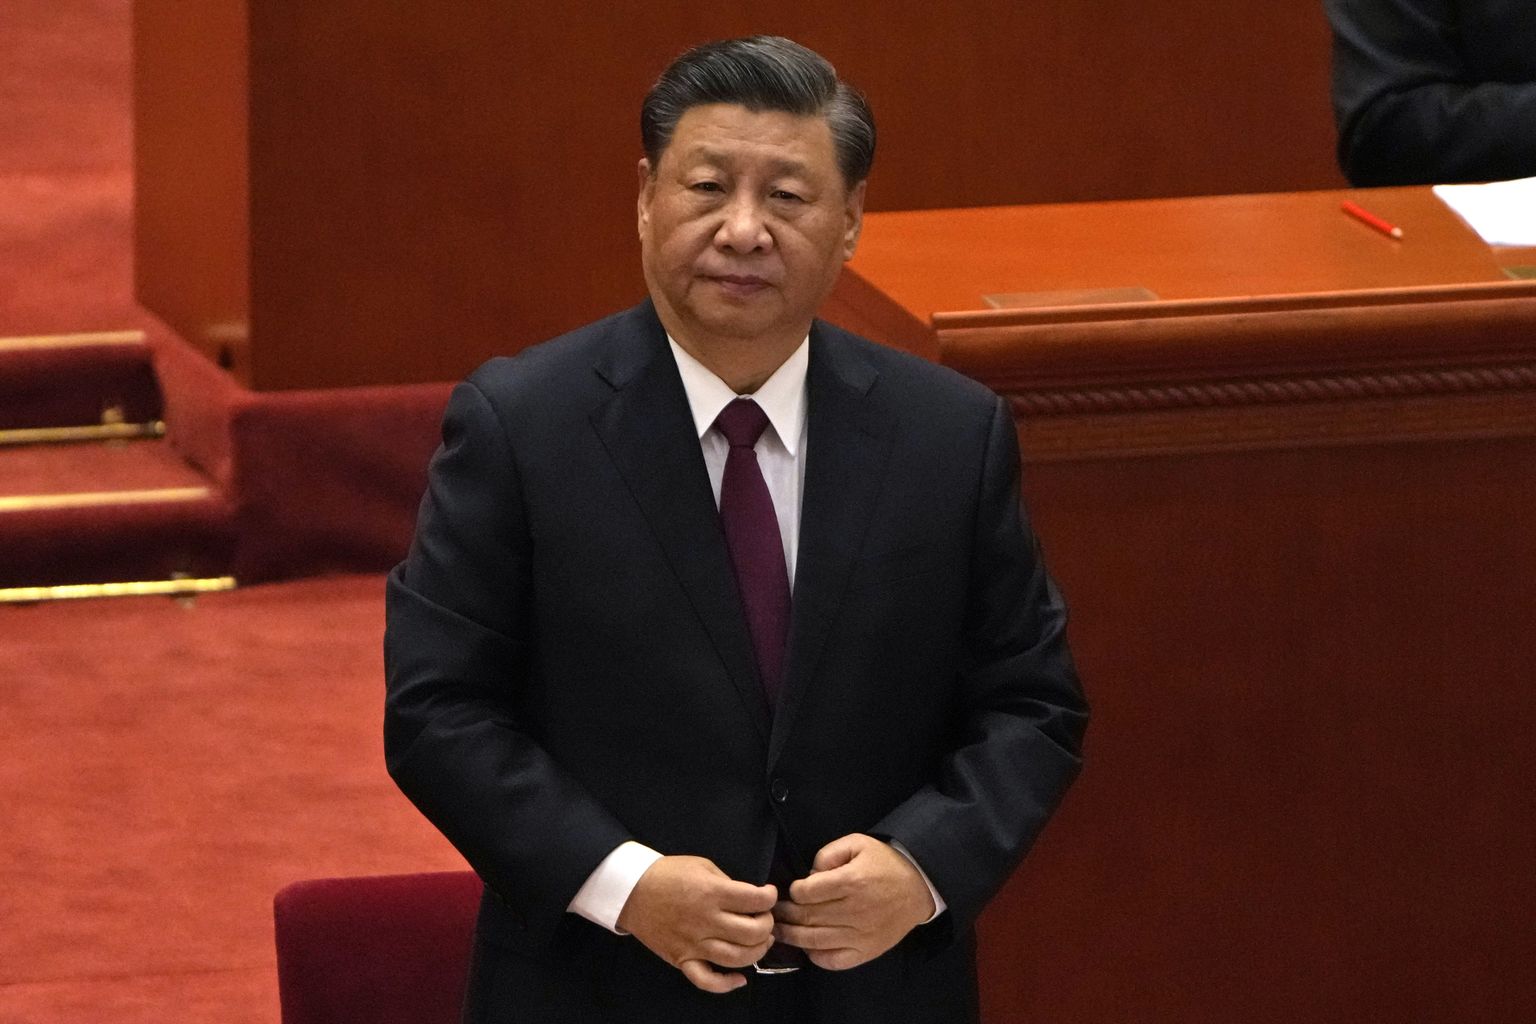 Hiina türann Xi Jinping suures rahvasaalis 8. aprillil 2022.